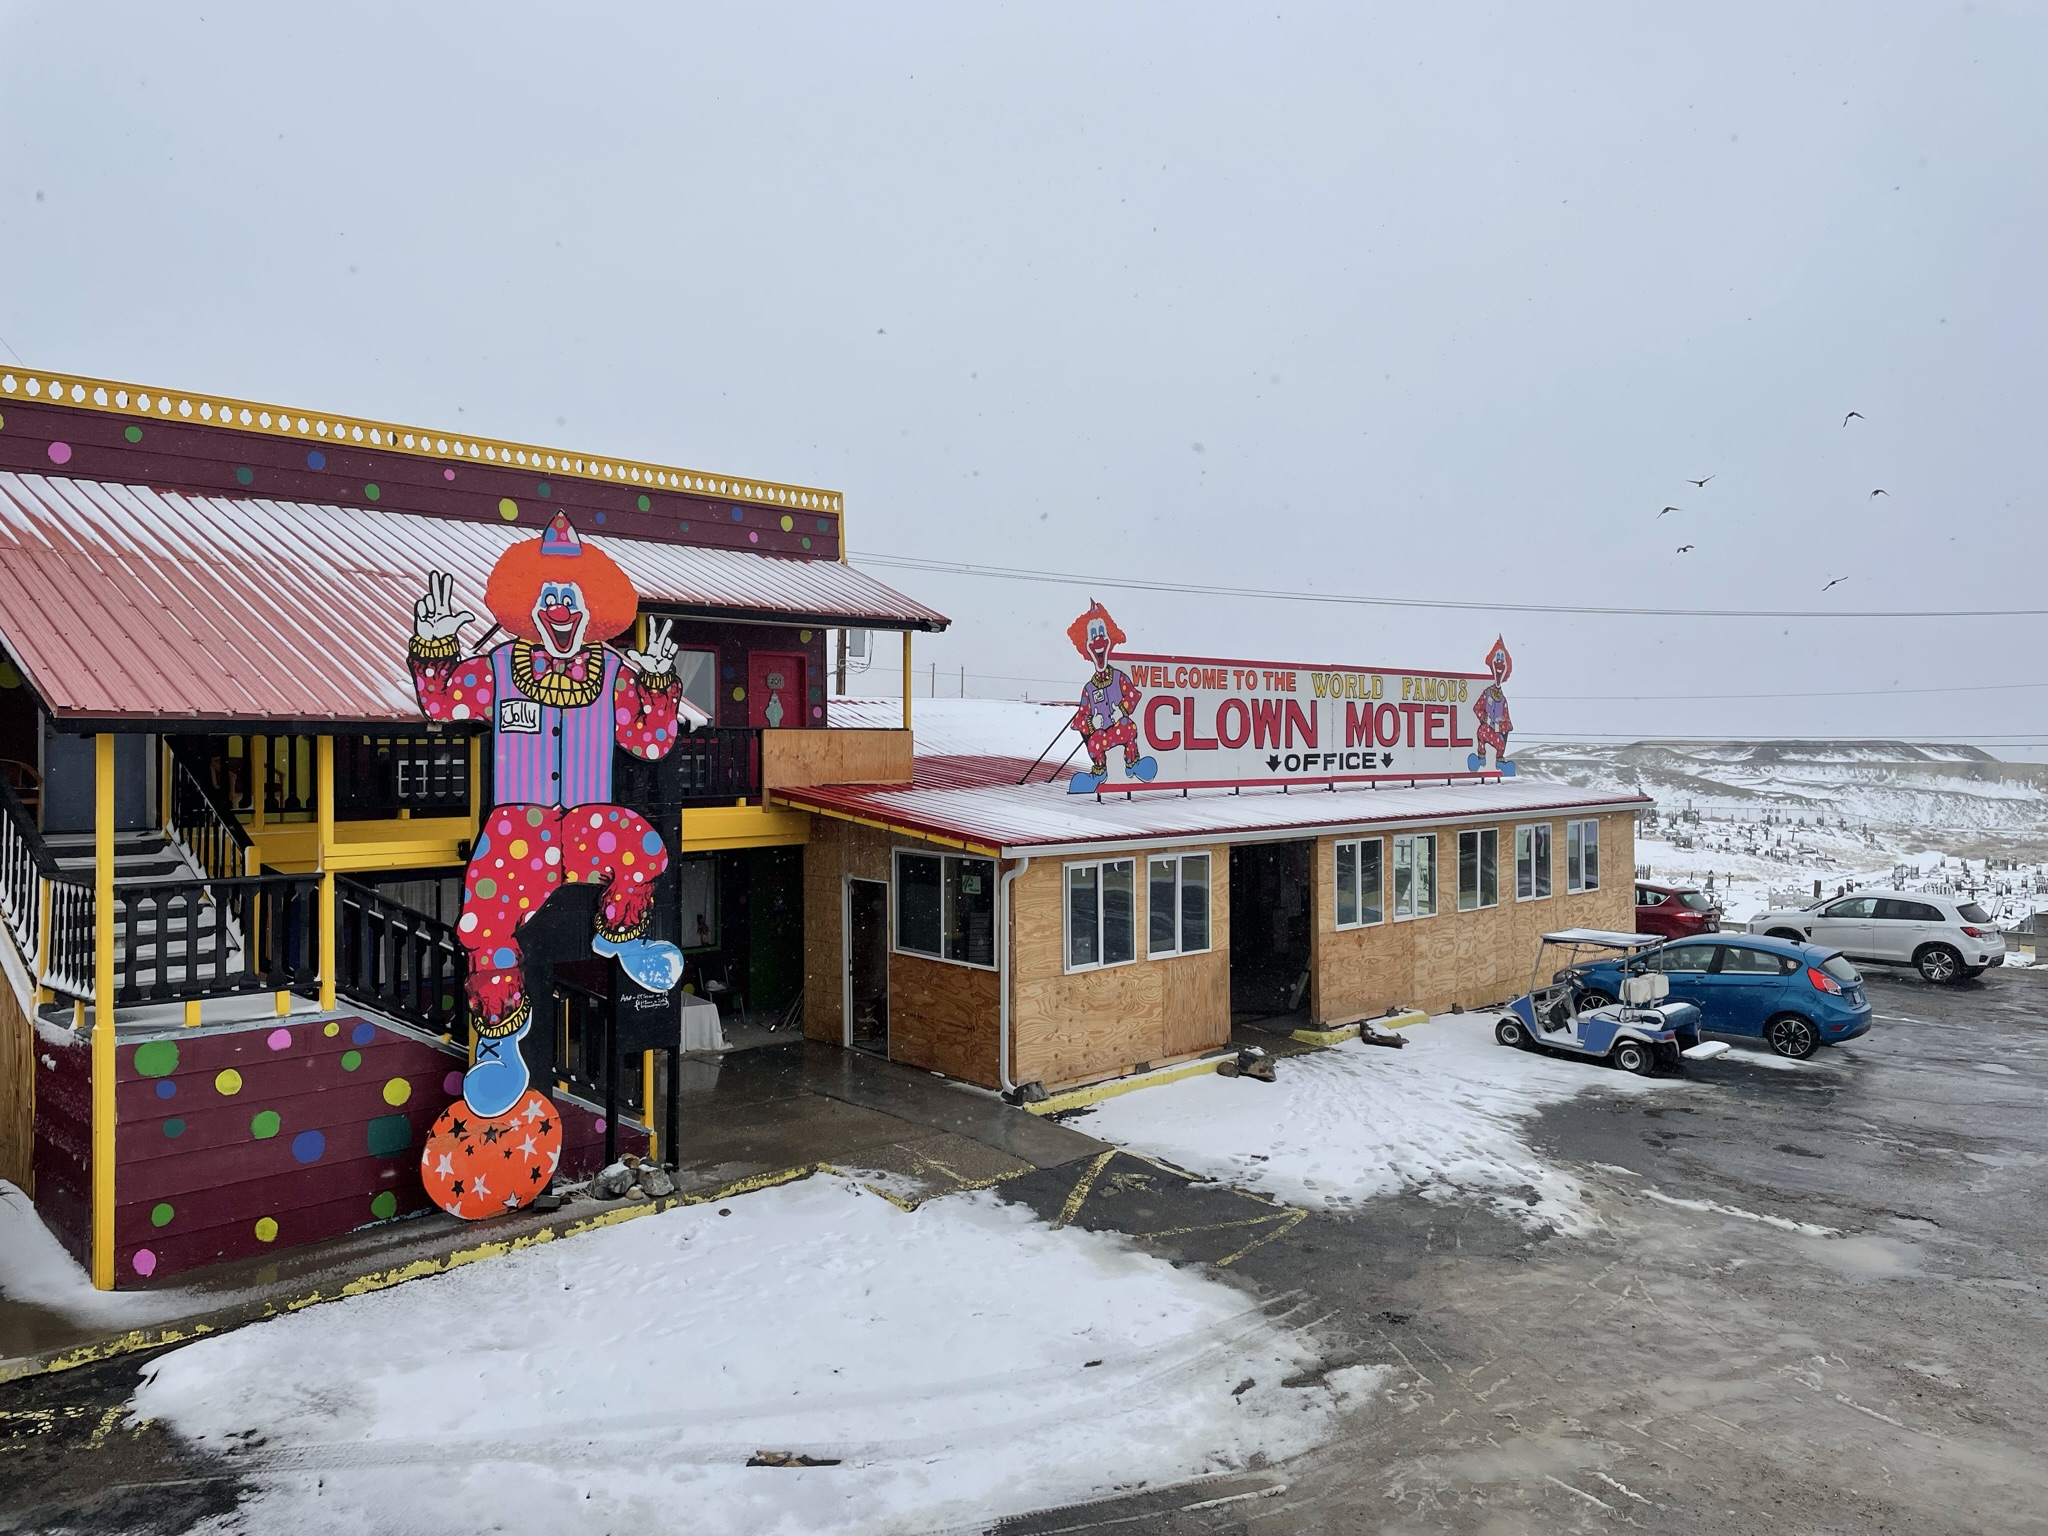 ¿Dormirías rodeado de payasos? Así es el espeluznante Clown Motel en Nevada